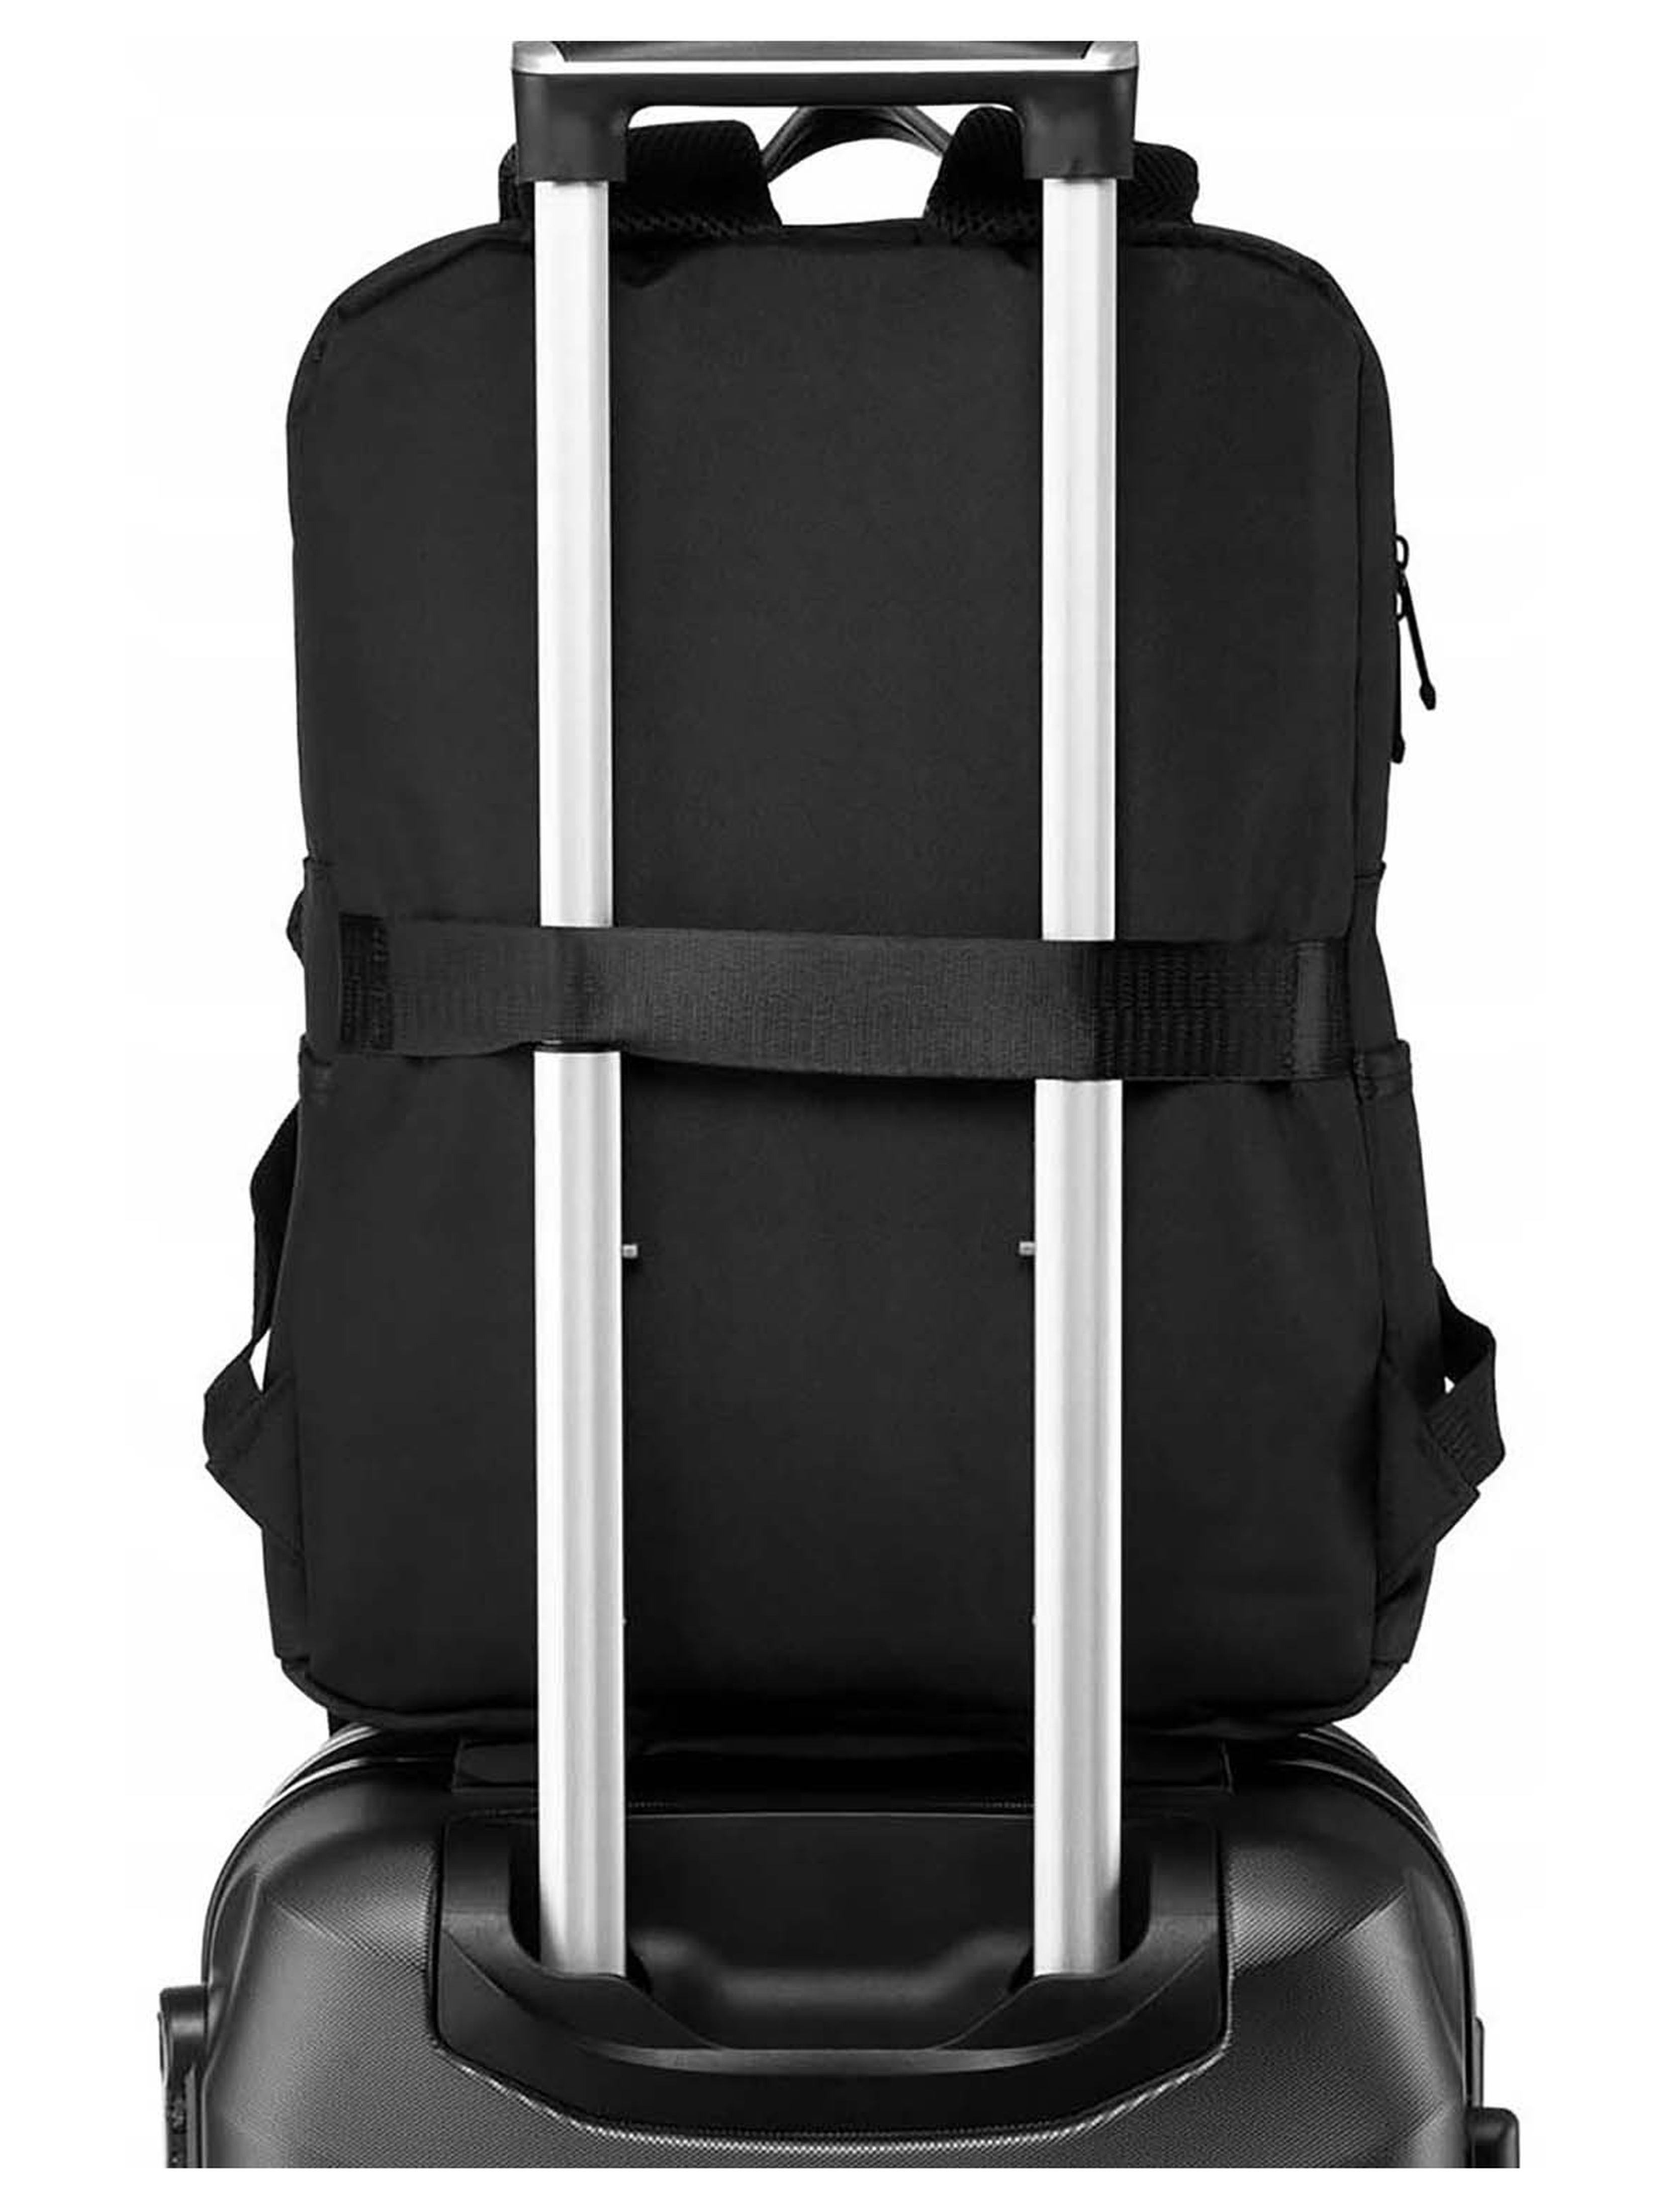 Podróżny plecak unisex idealny na bagaż podręczny do samolotu - Peterson